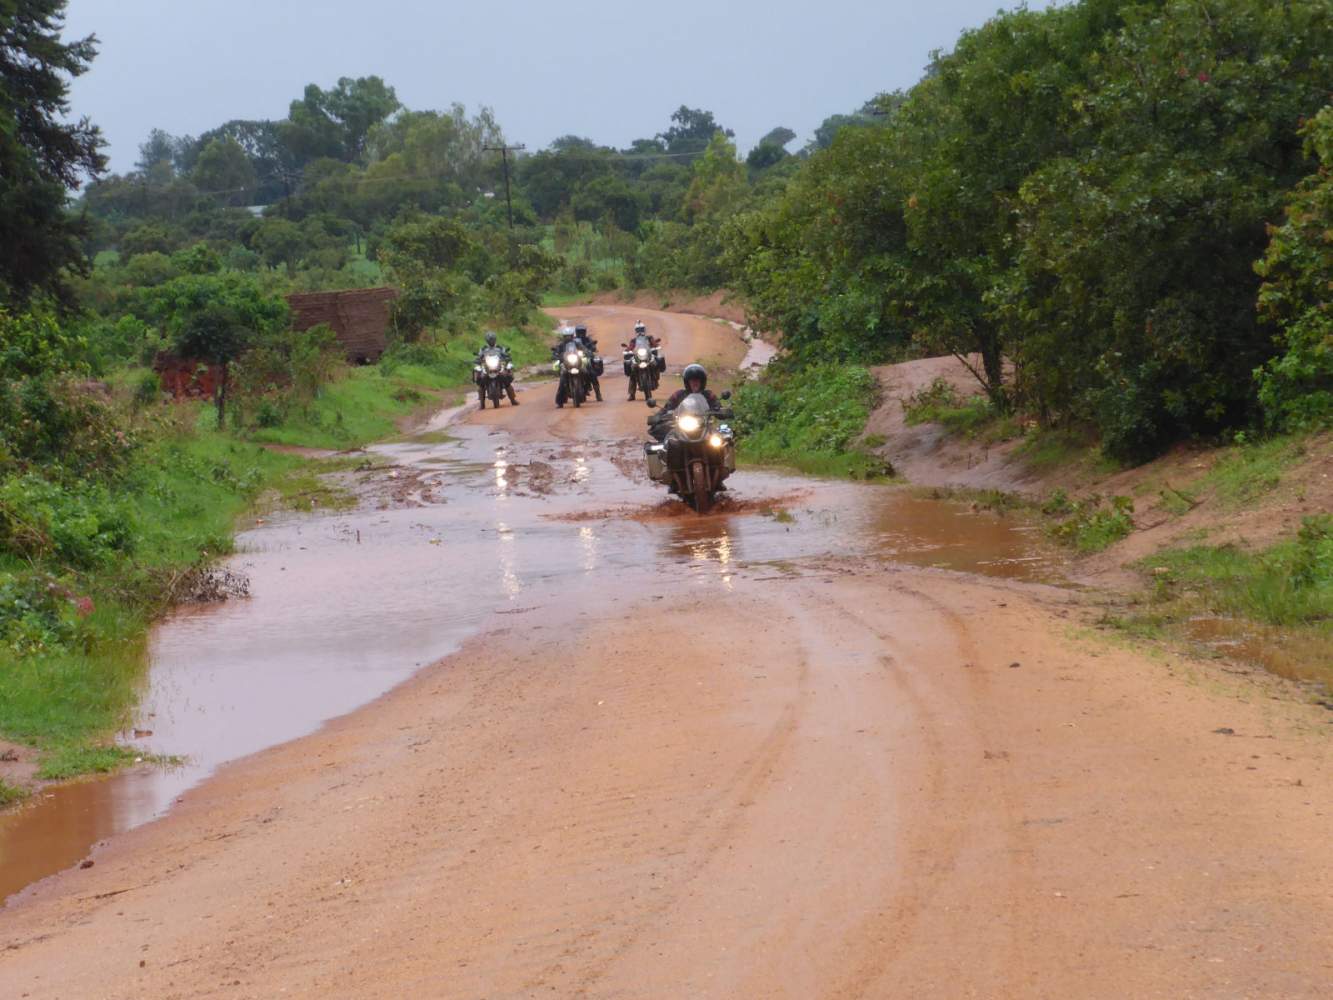 Motorradreise durch Afrika auf roten Sandwegen